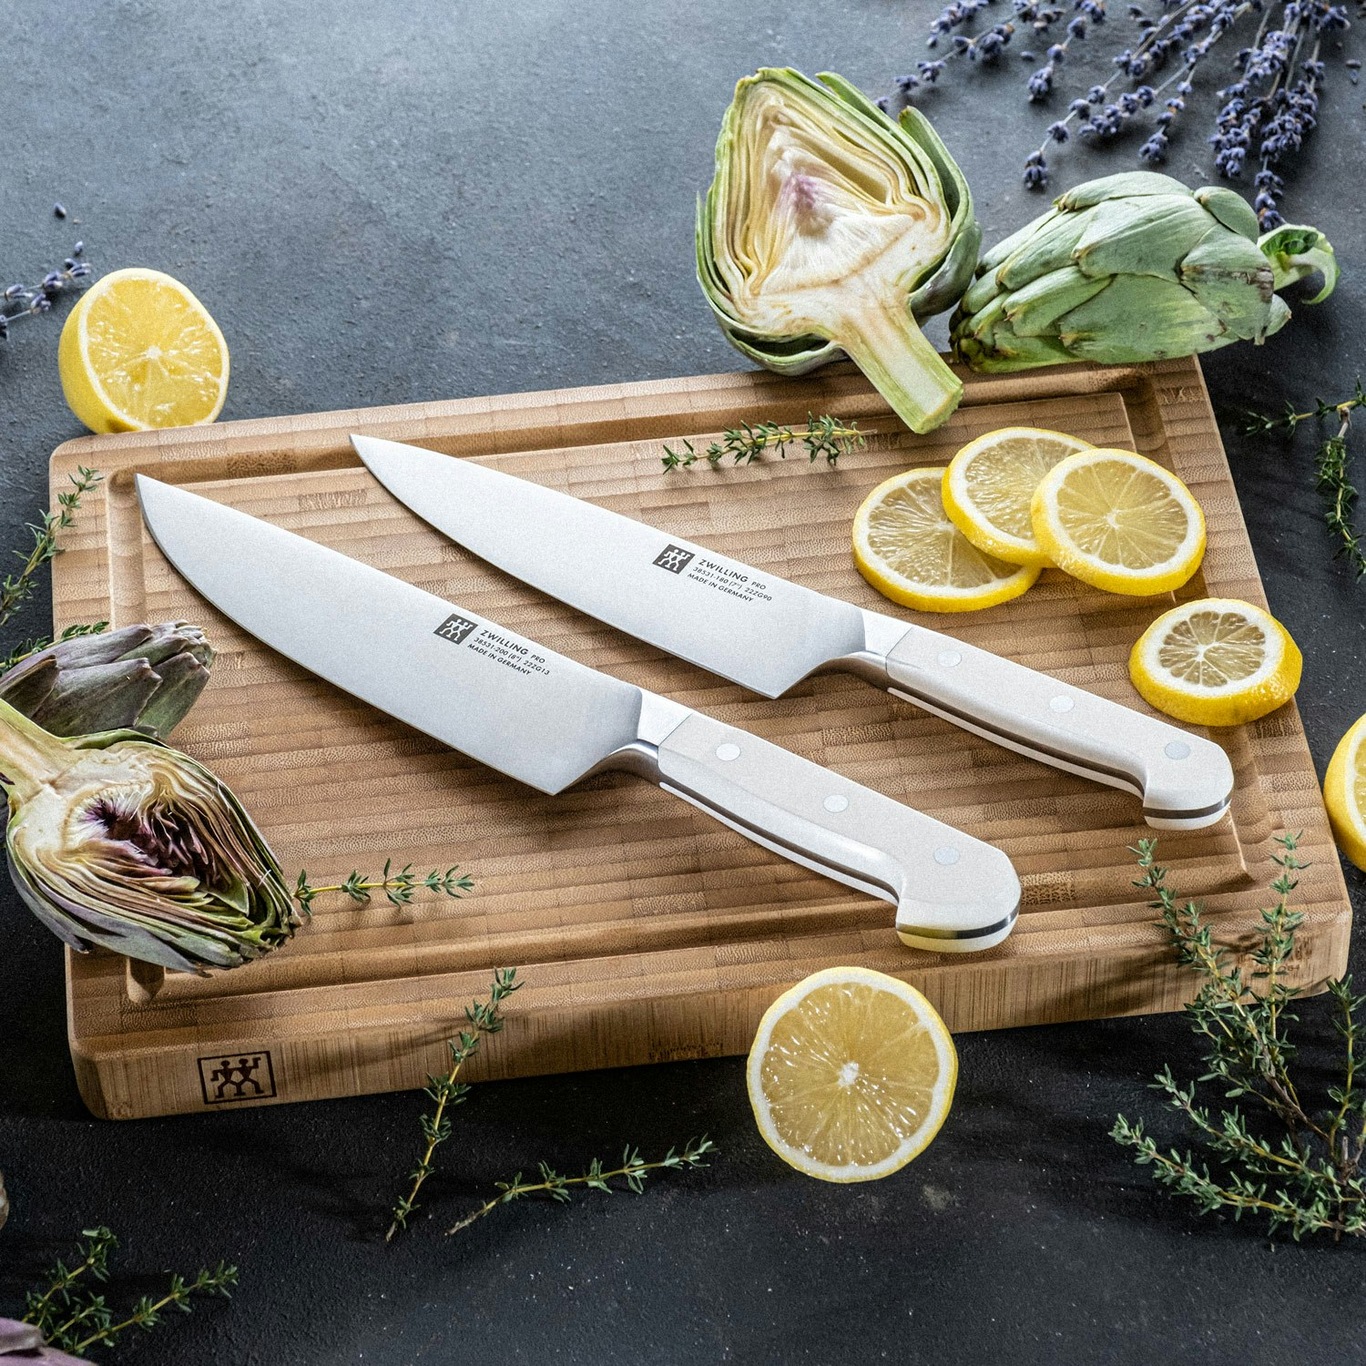 https://royaldesign.com/image/2/zwilling-pro-le-blanc-chef-knife-20-cm-1?w=800&quality=80